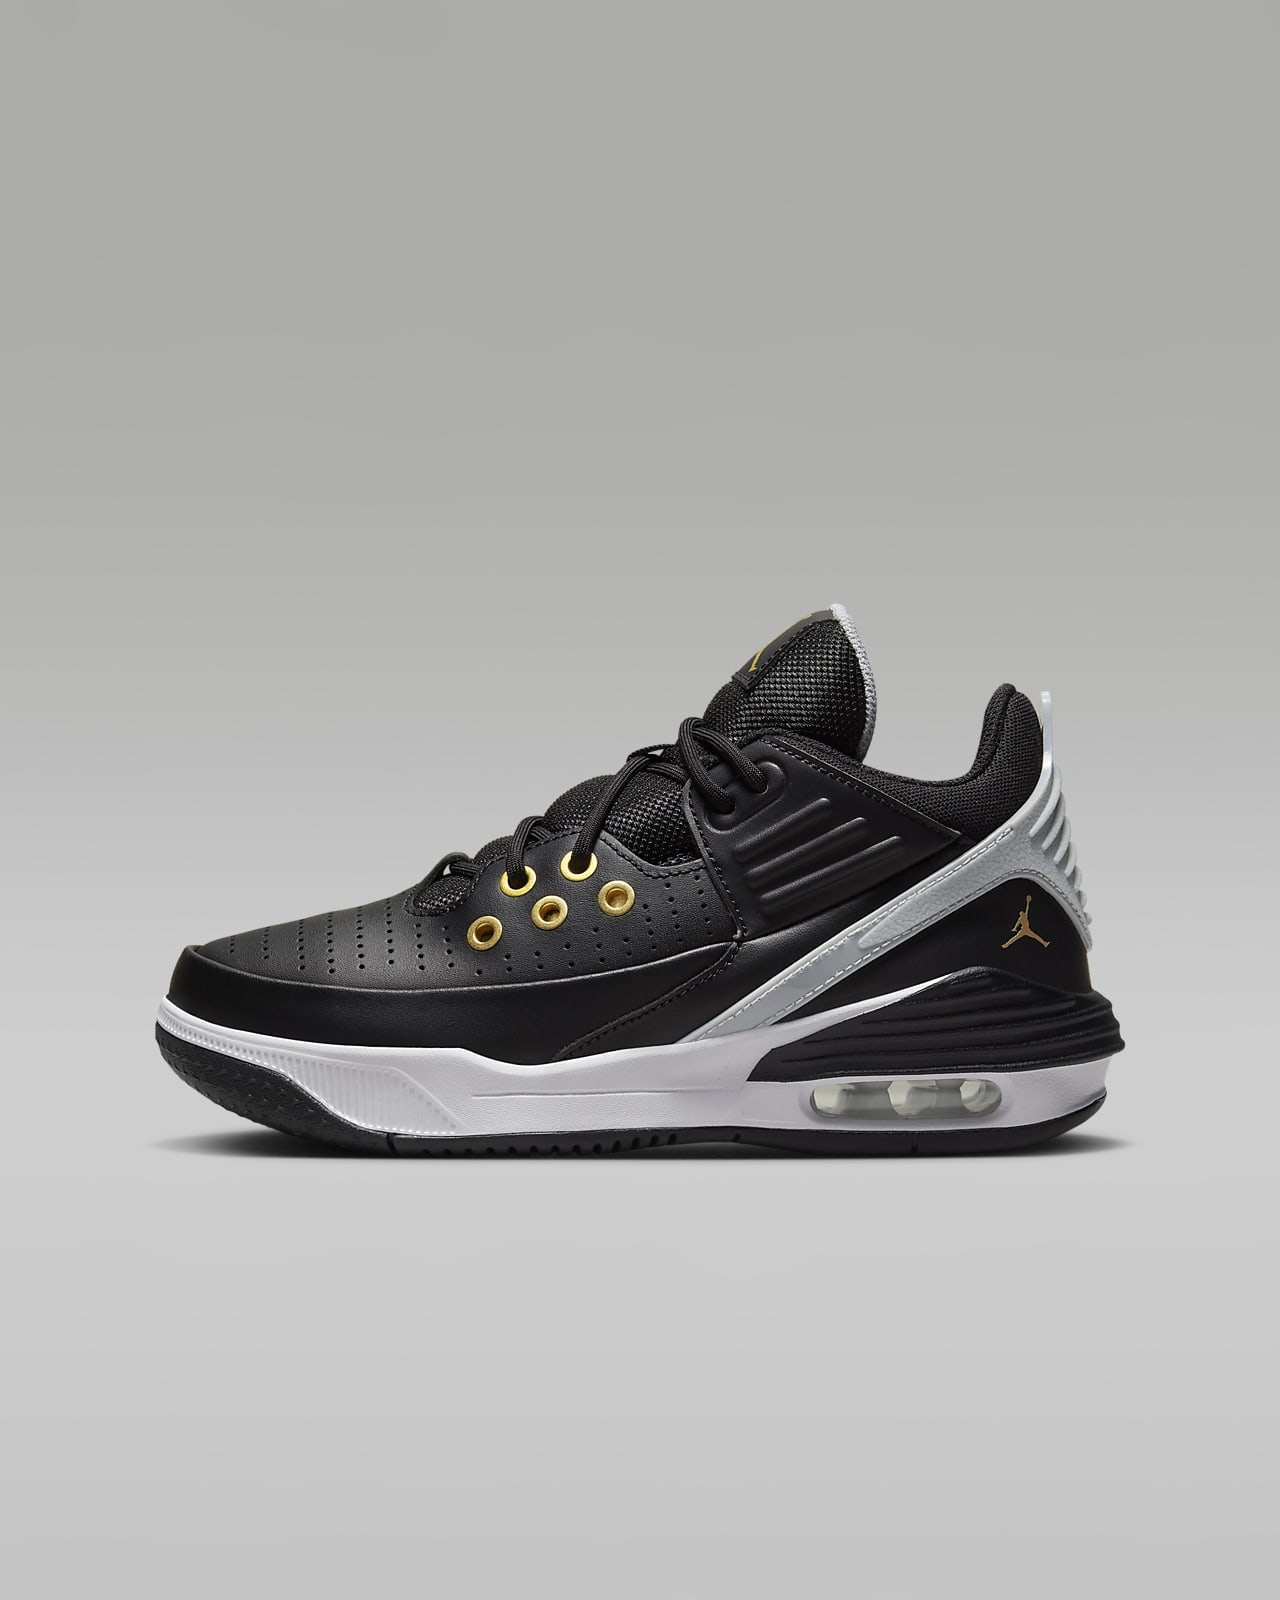 HOT] Louis Vuitton Gold Air Jordan 11 Sneakers